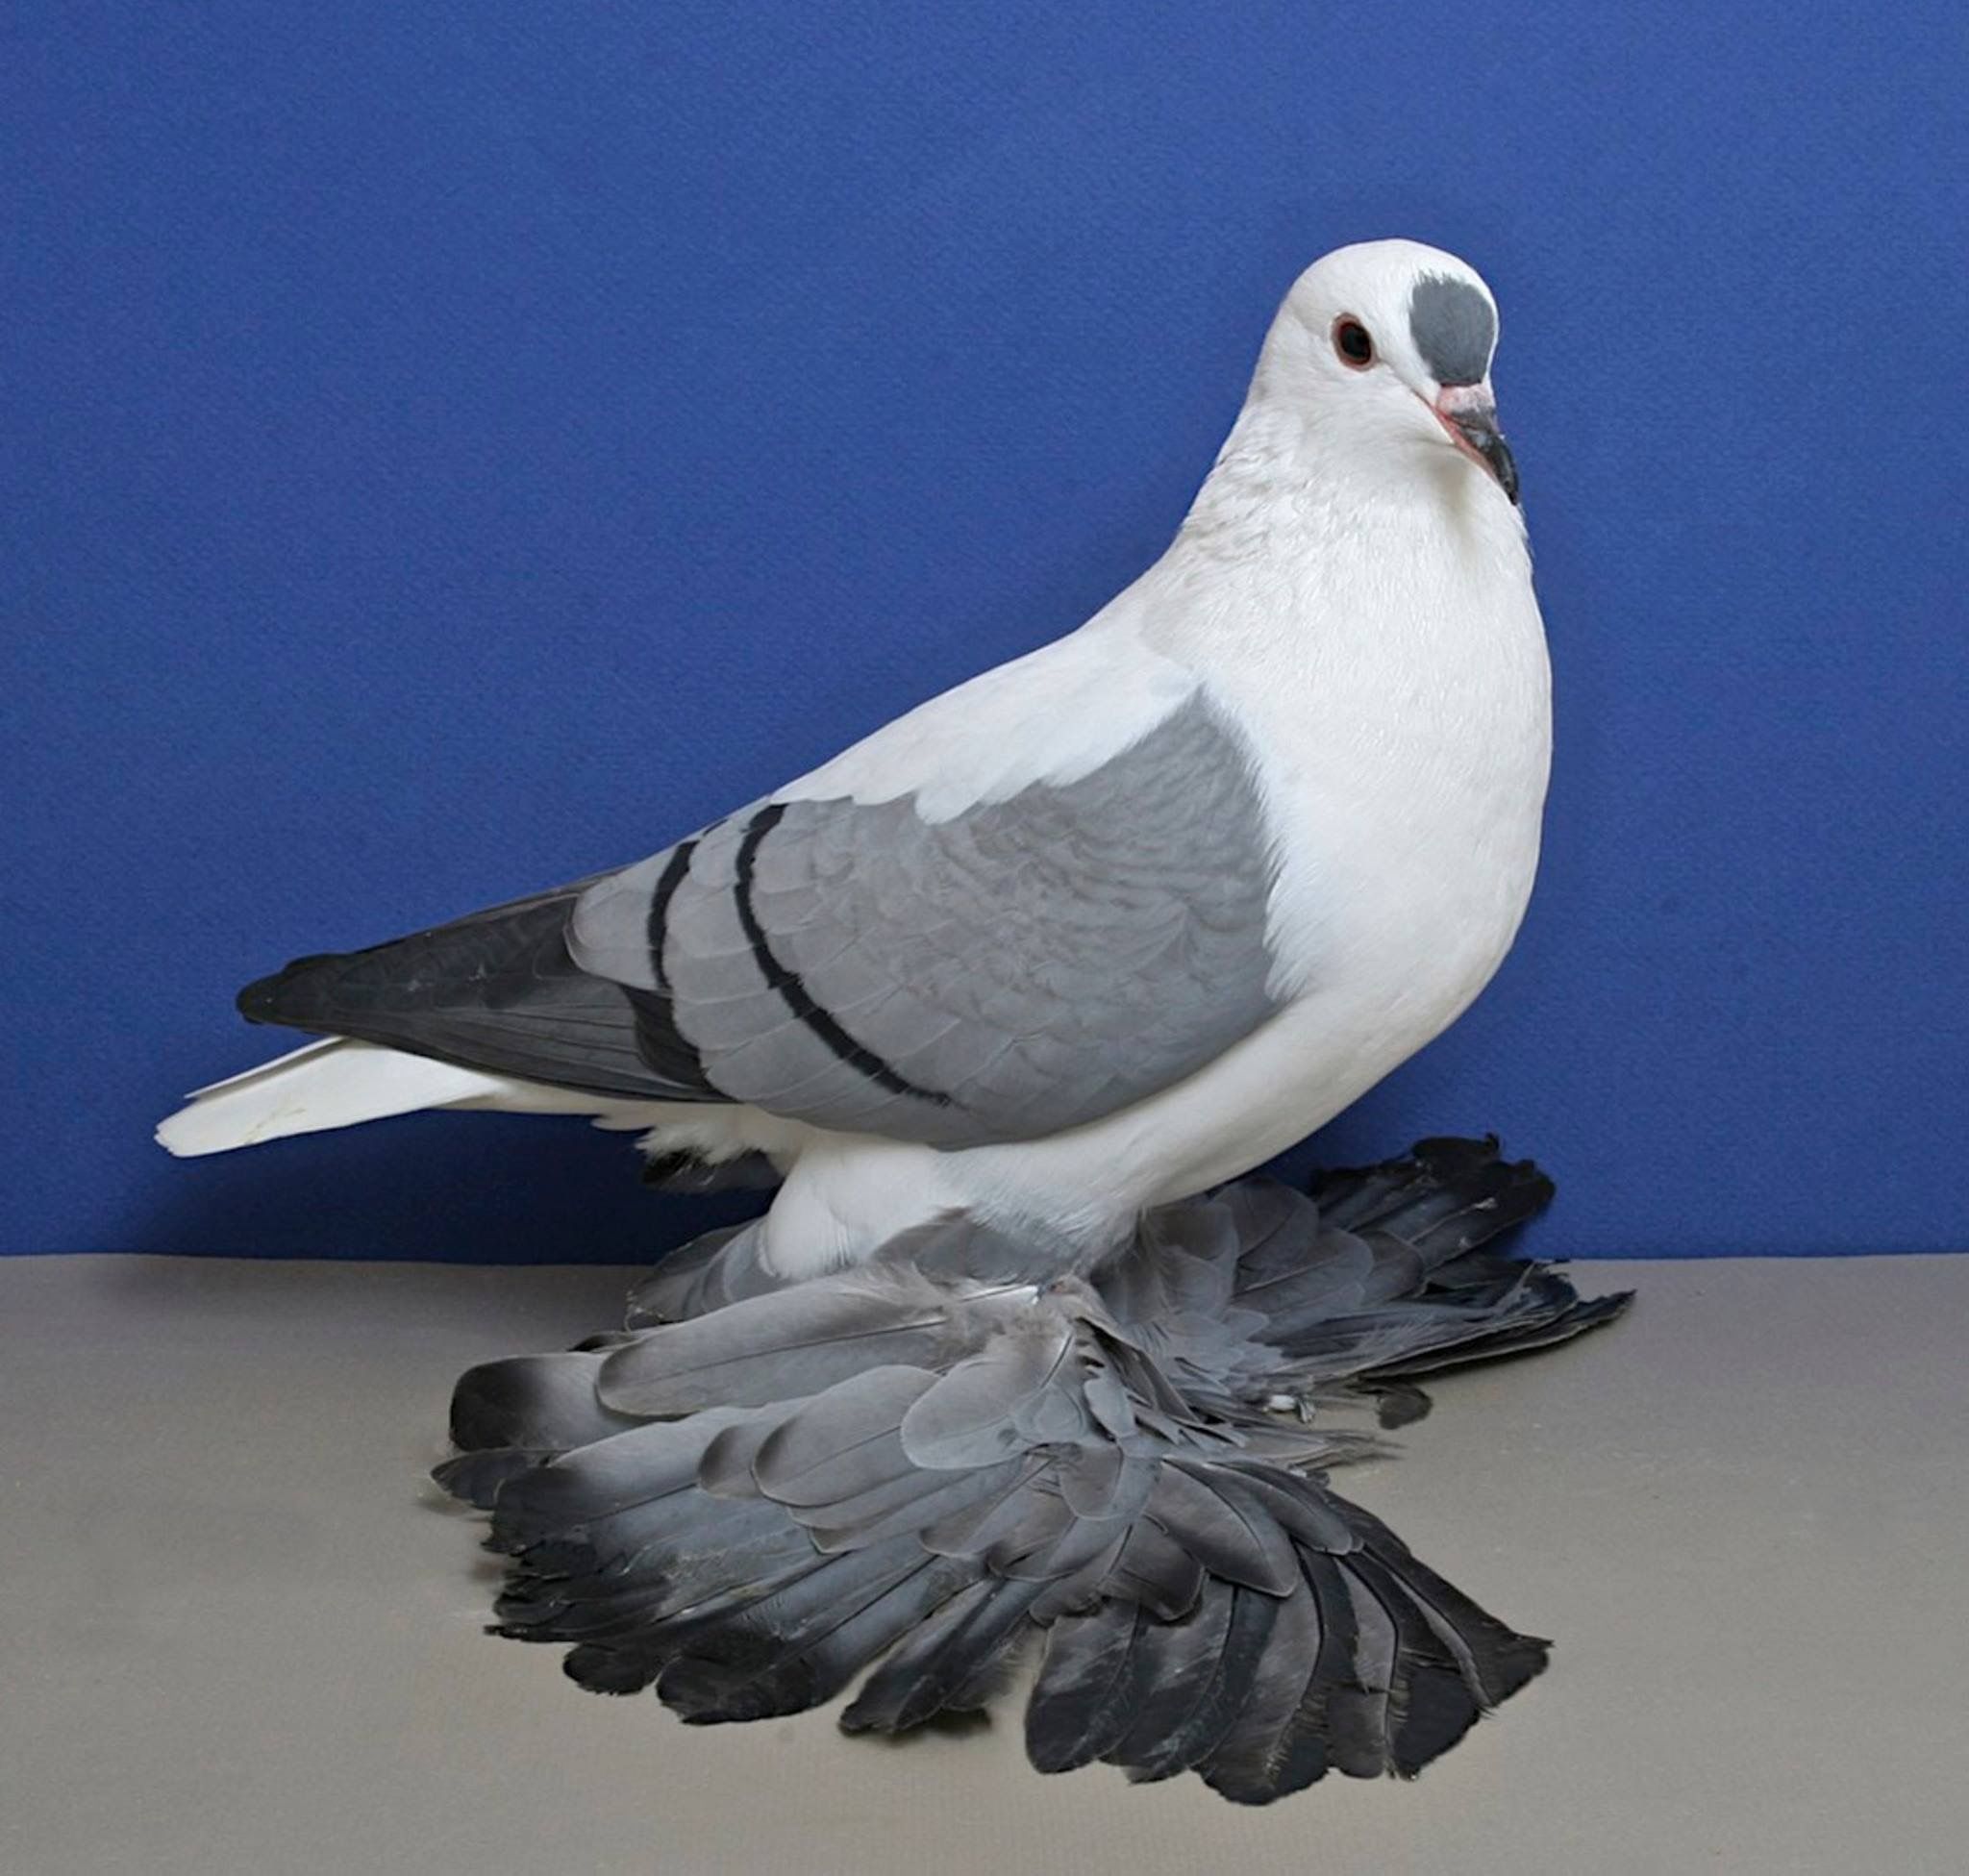 Какие породы голубей бывают фото и название